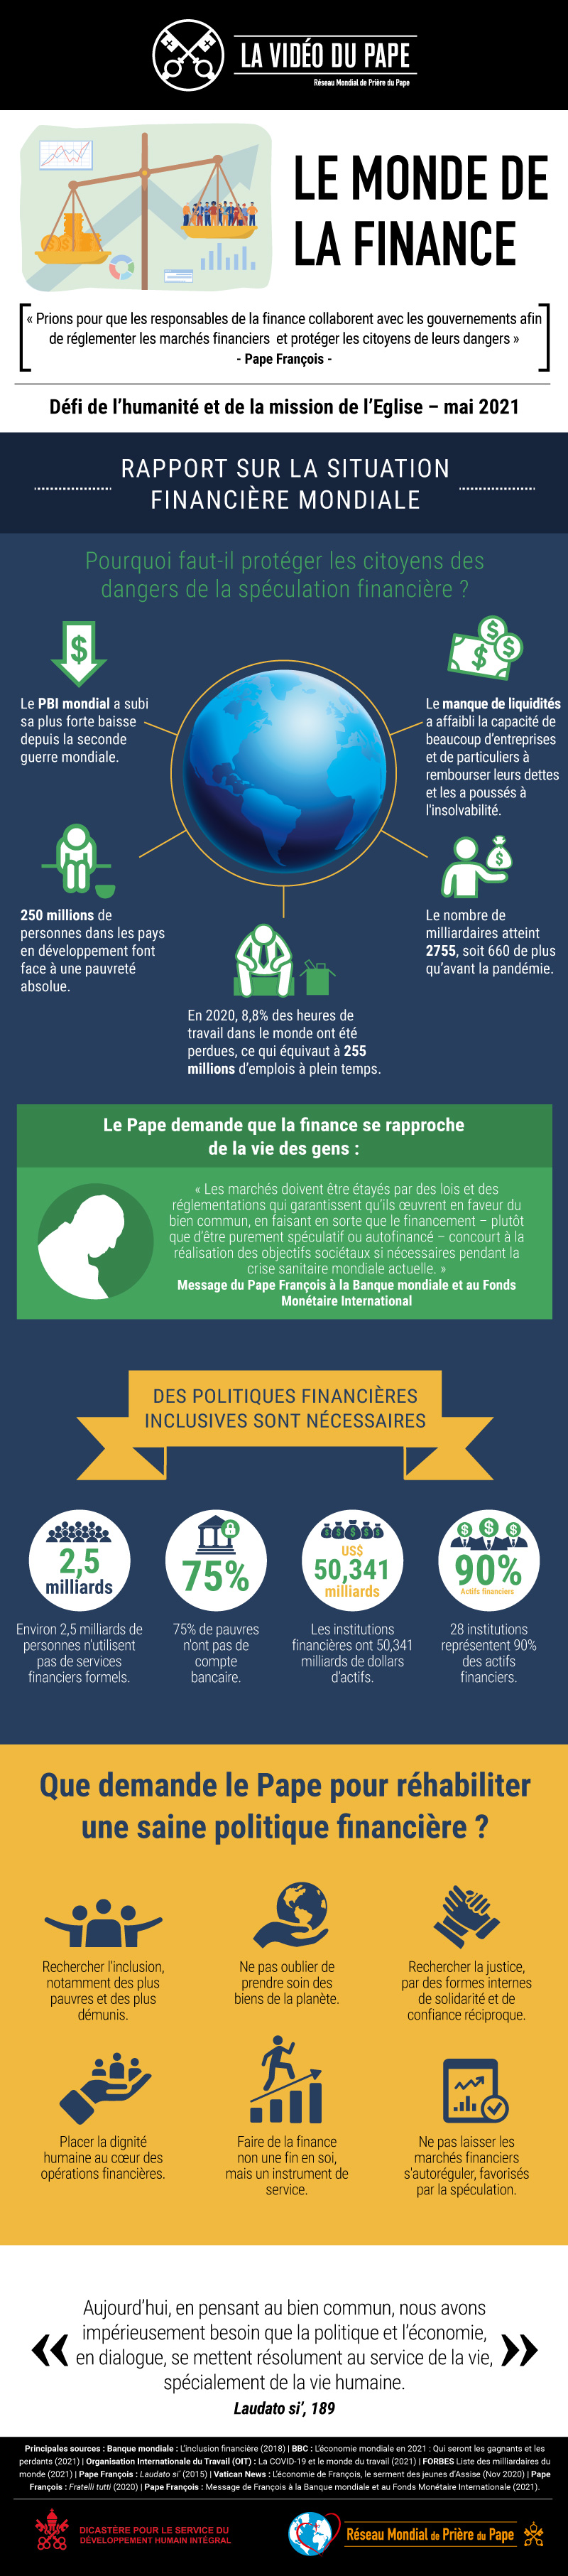 Infographie-TPV-5-2021-FR-Le-monde-de-la-finance.jpg